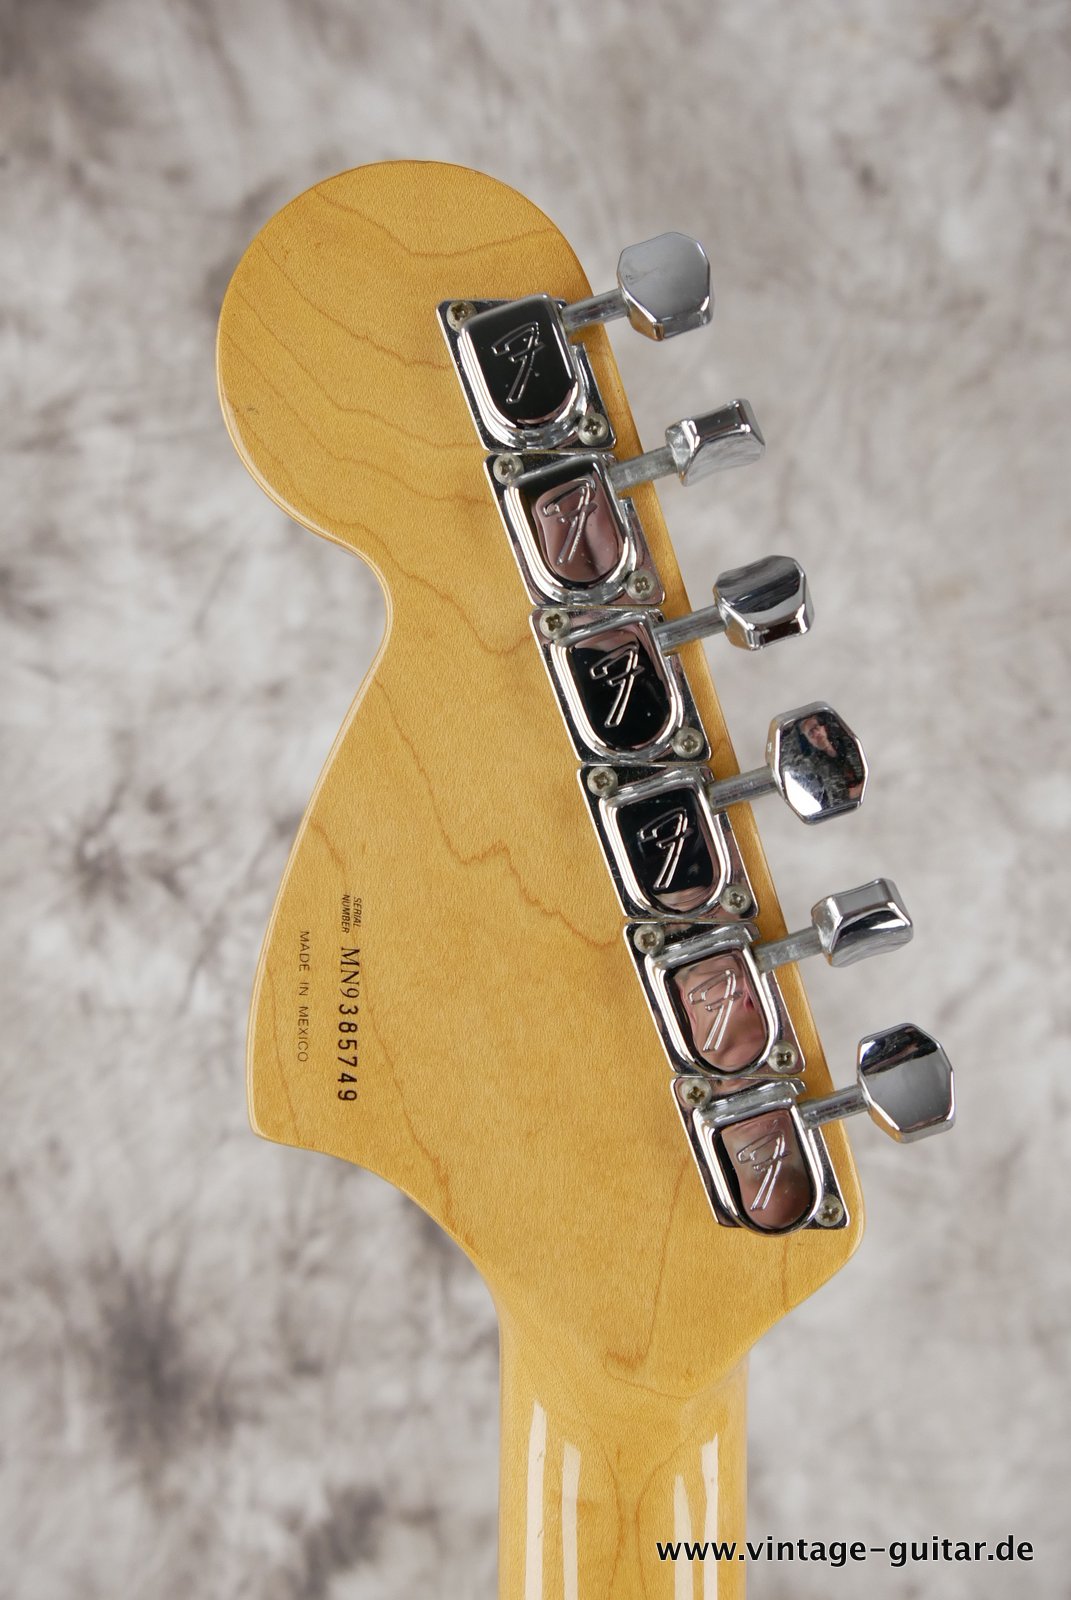 Fender_Stratocaster_70s_reissue_maple_neck_1999_Mexico-010.JPG